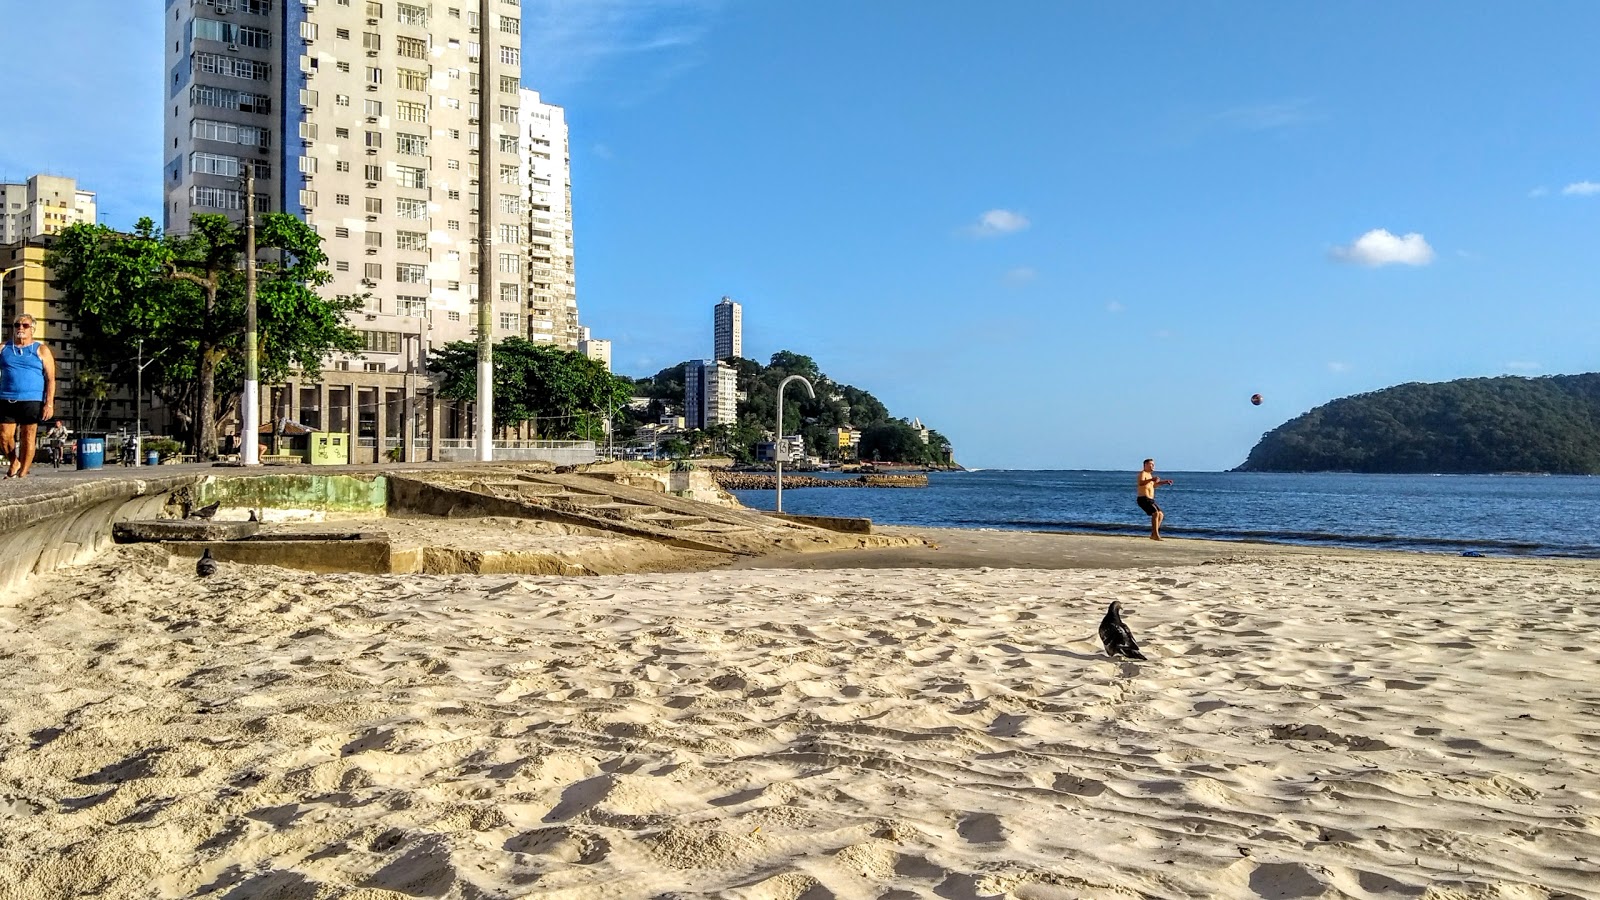 Praia dos Milionarios'in fotoğrafı ve yerleşim